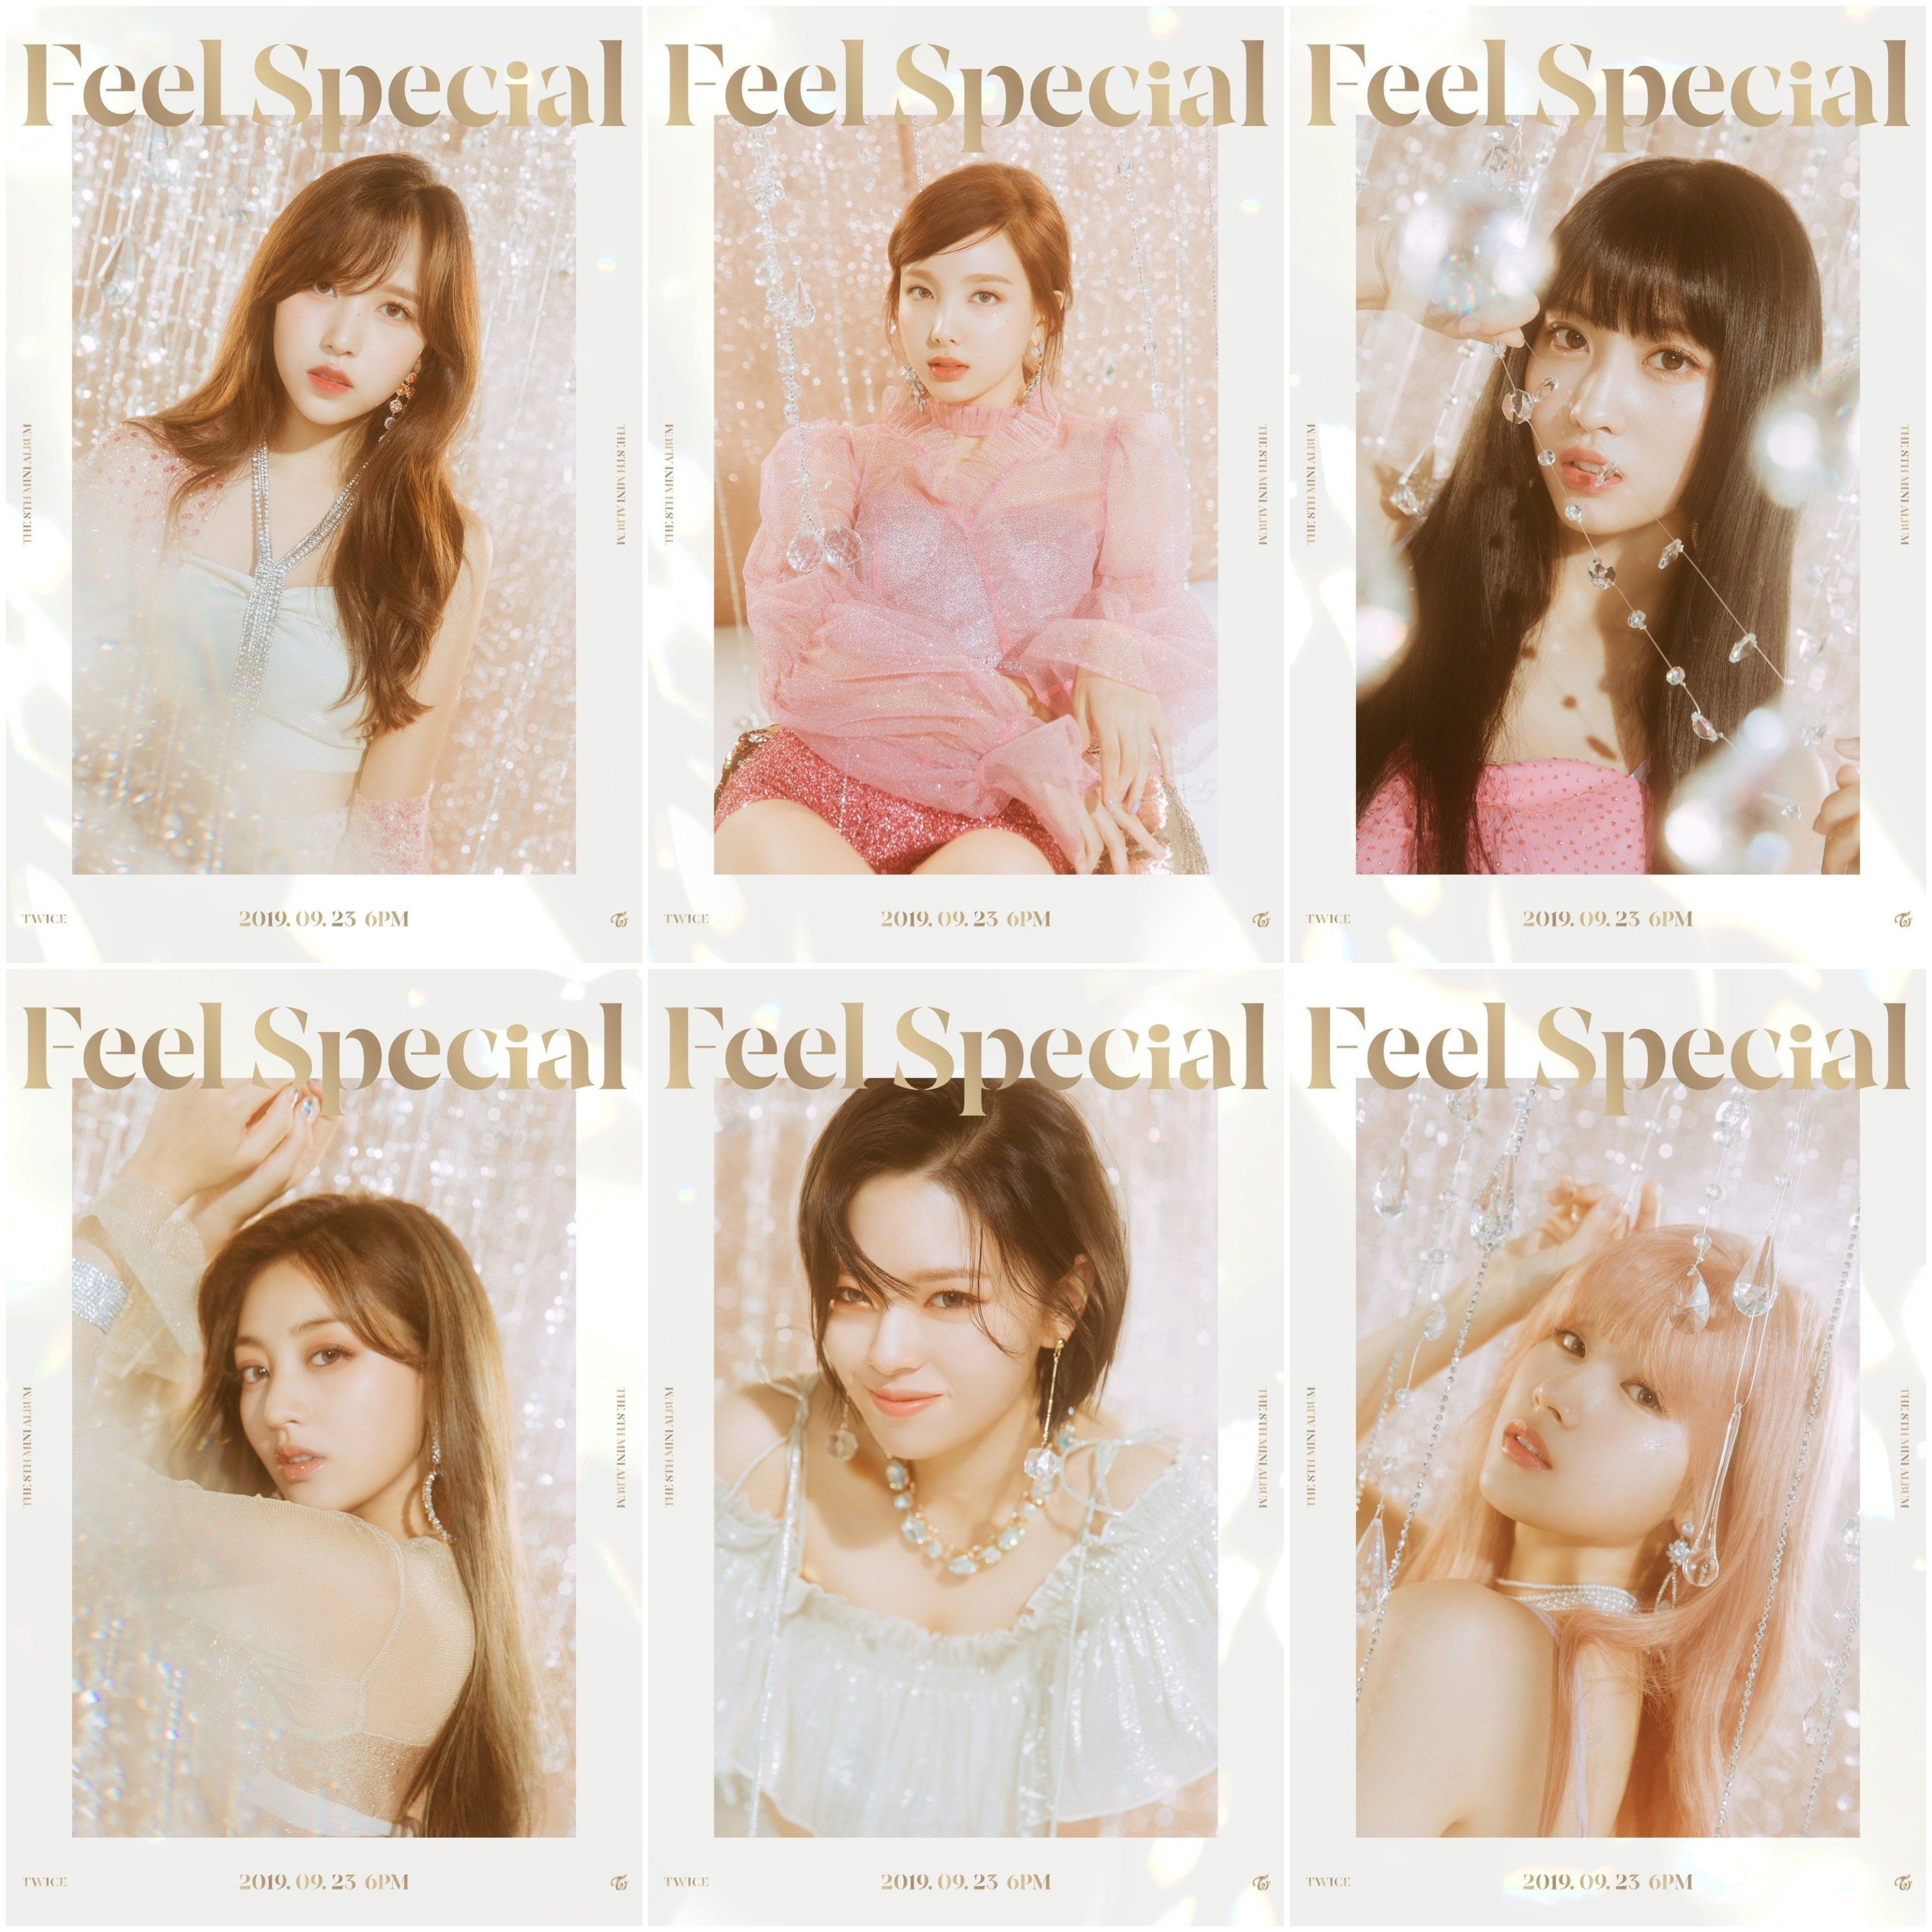 트와이스 Feel Special 티저 사진모음(나정모사지미)